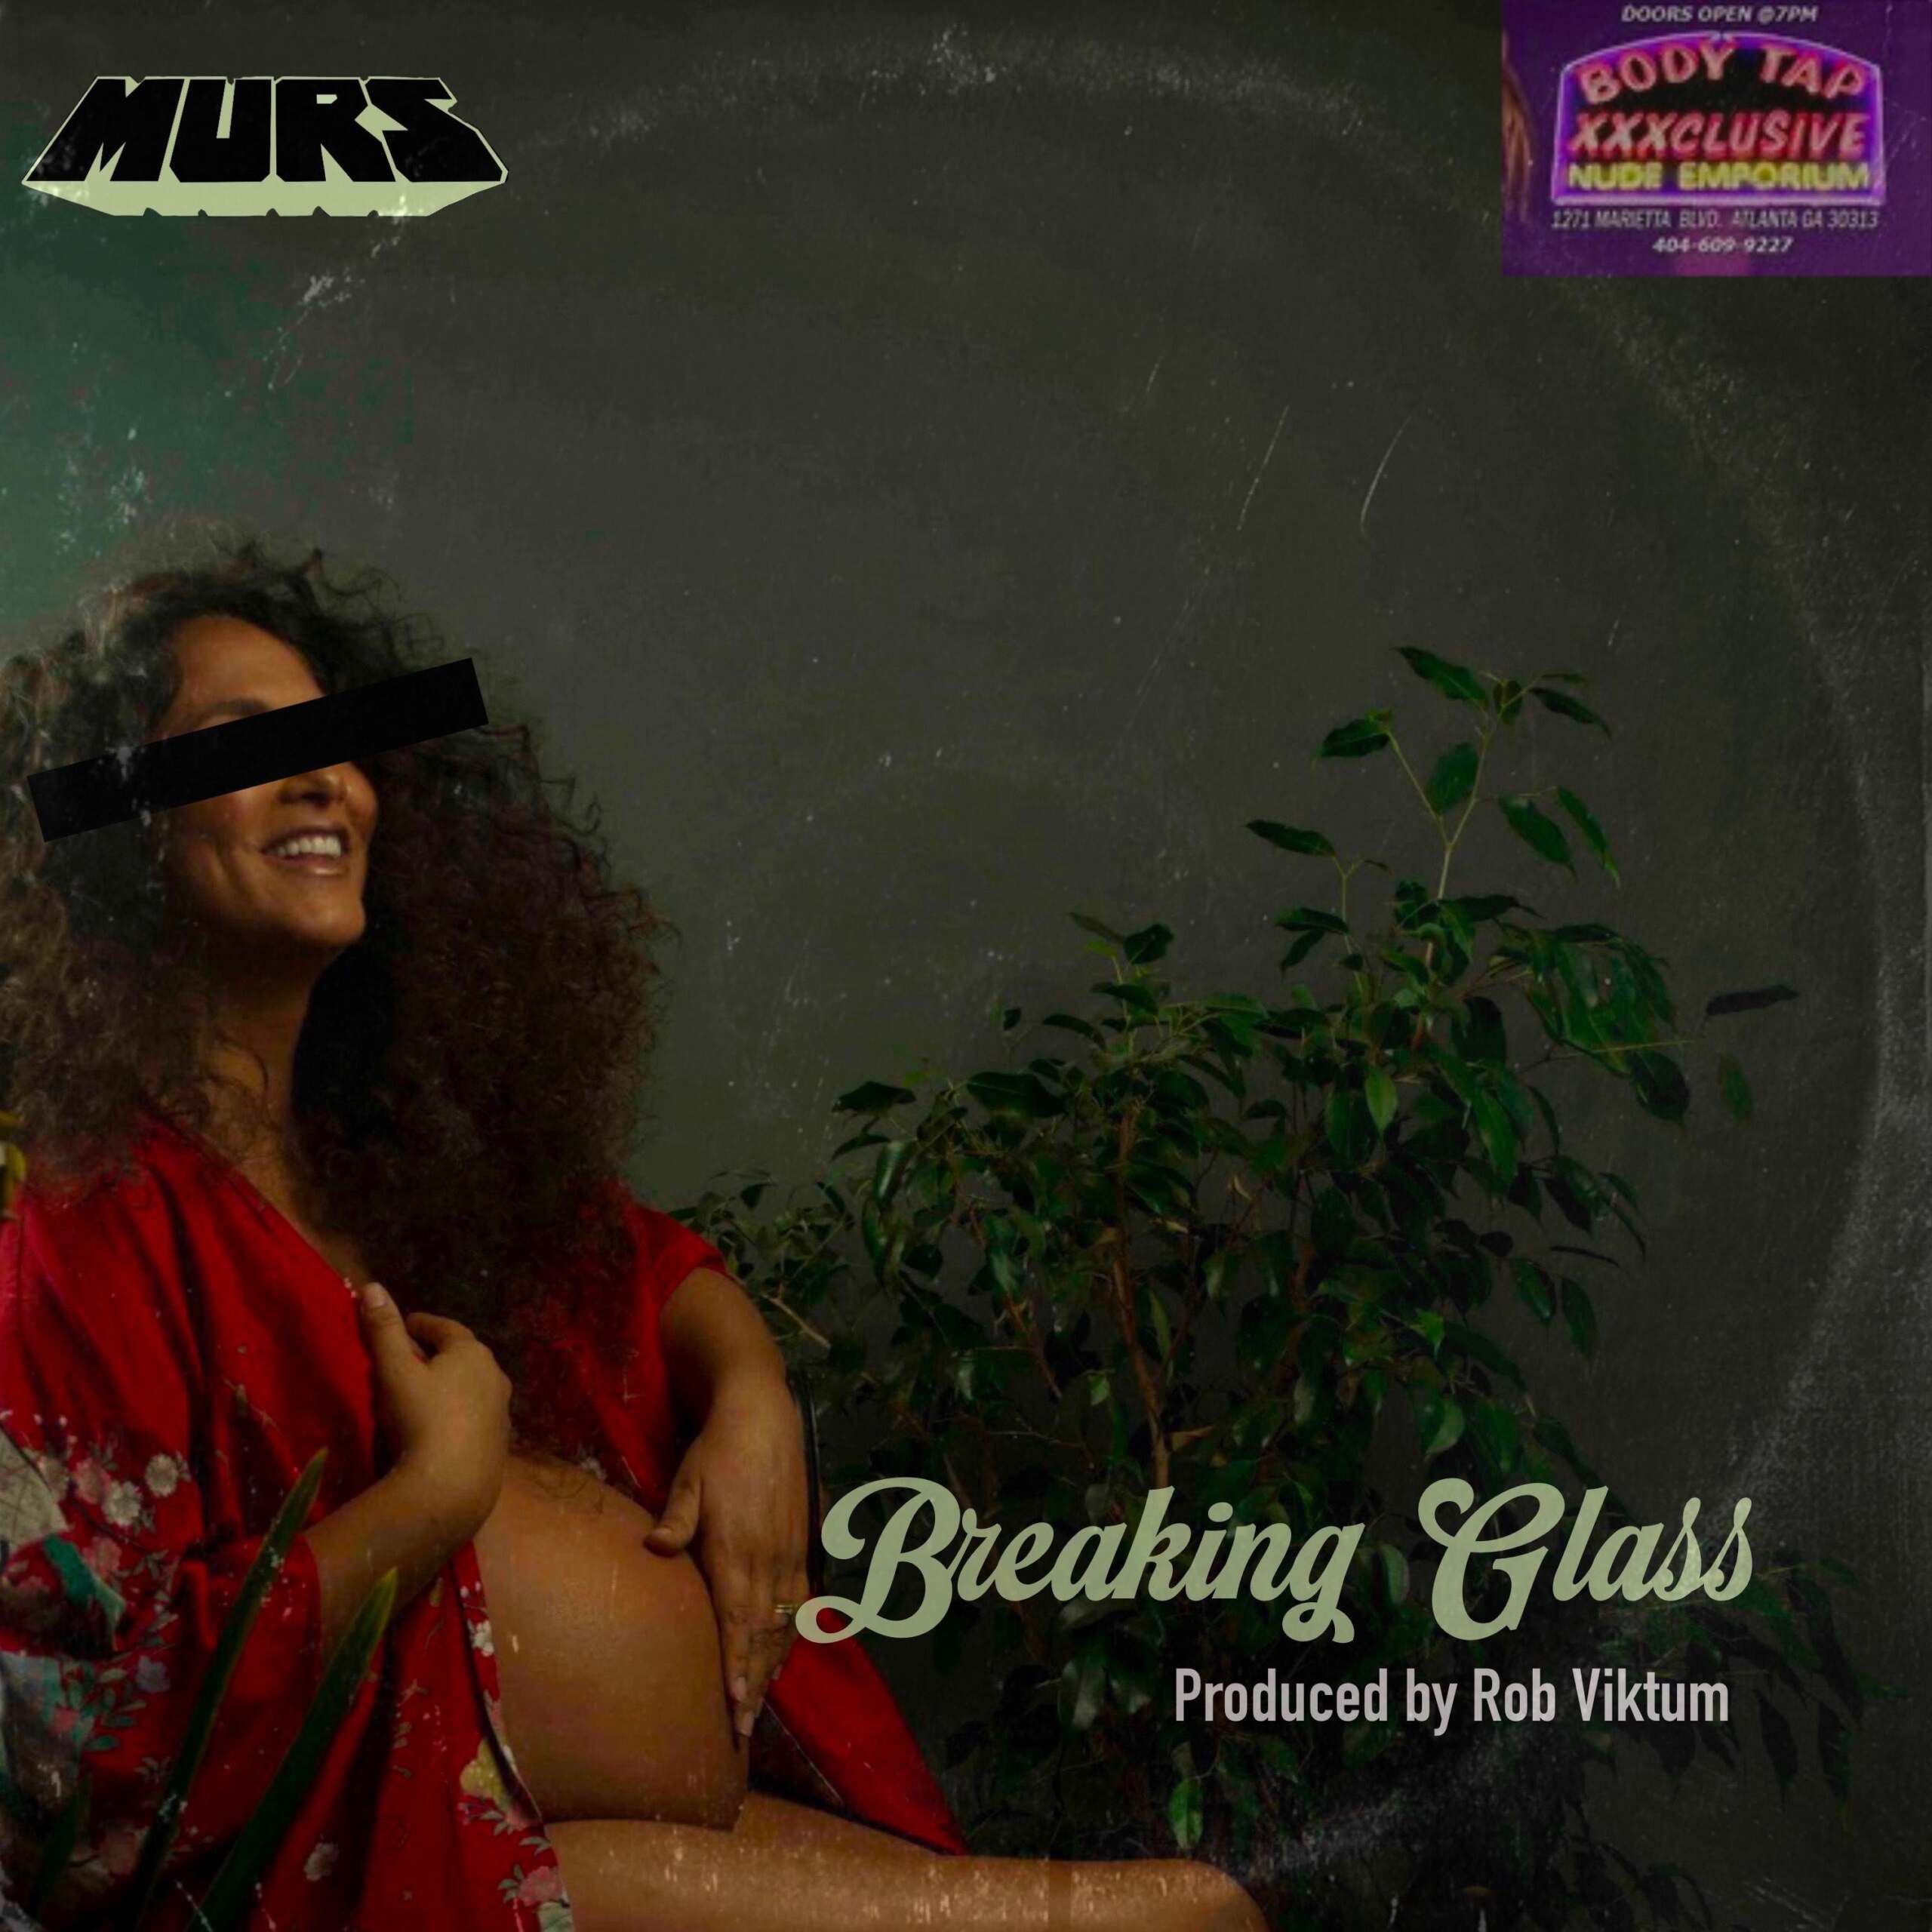 Murs "Breaking Glass" (Audio)